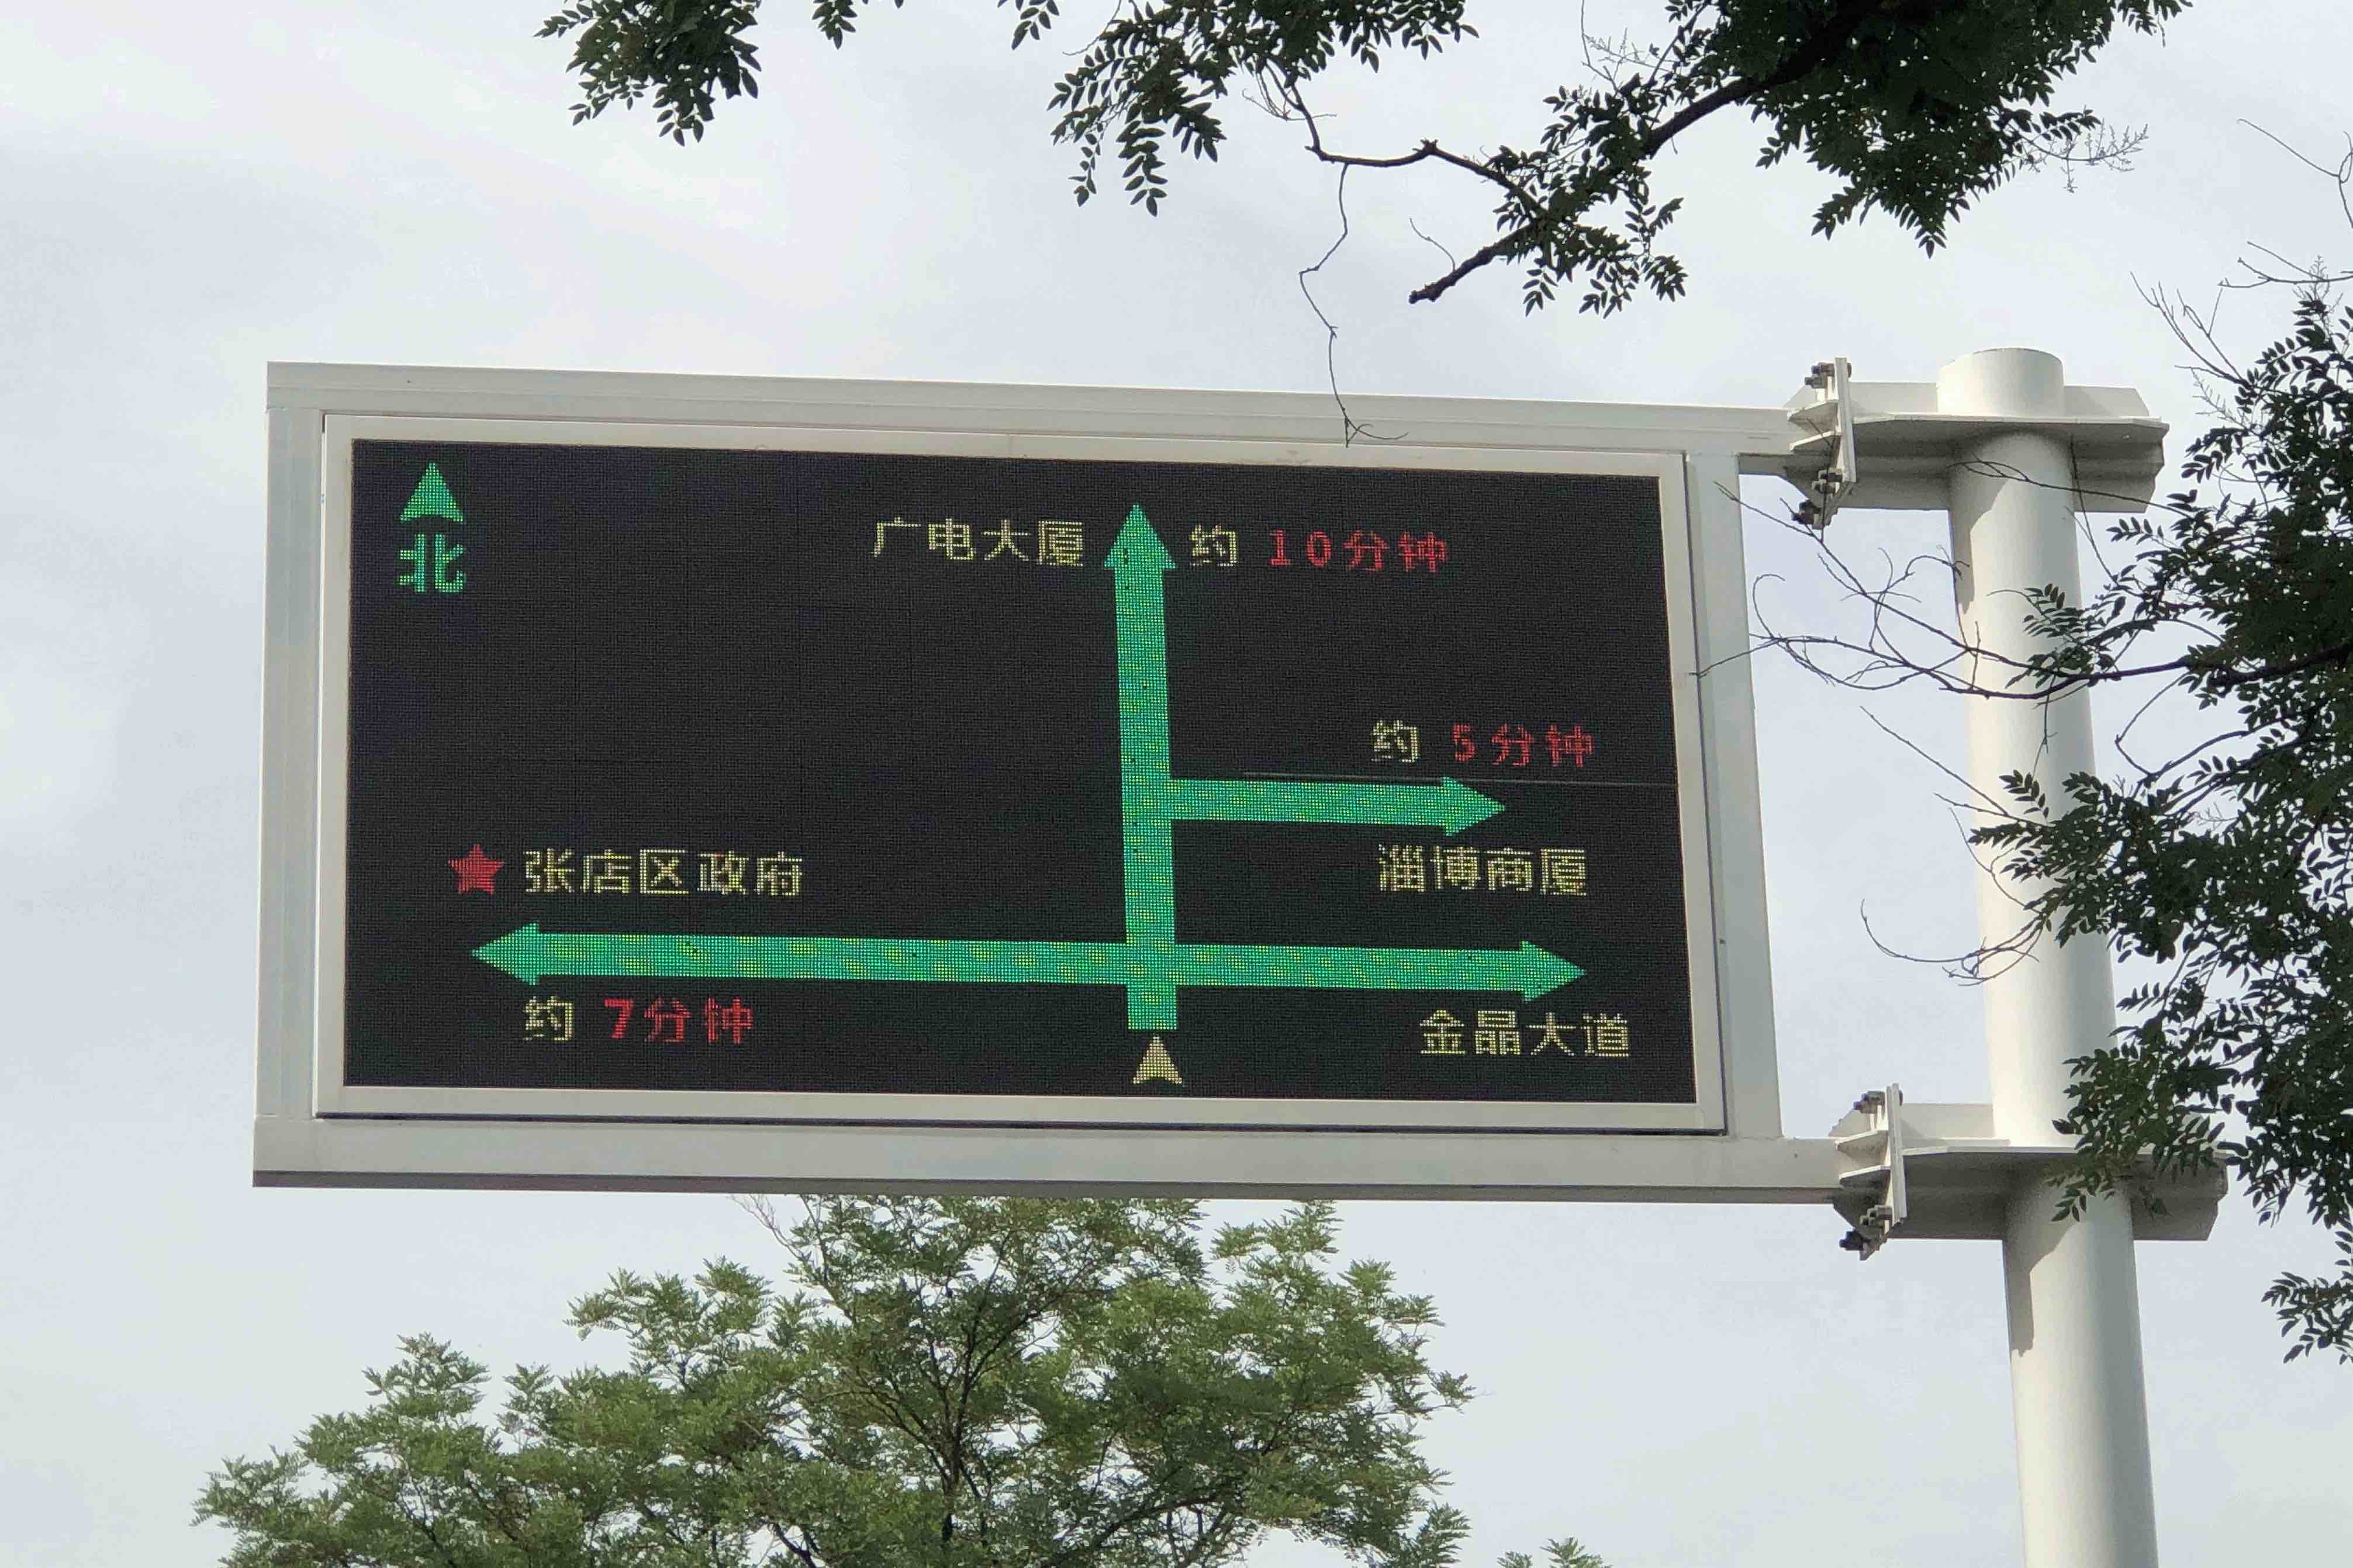 直播路况治愈拥堵 淄博中心城区增设"交通诱导屏"助力